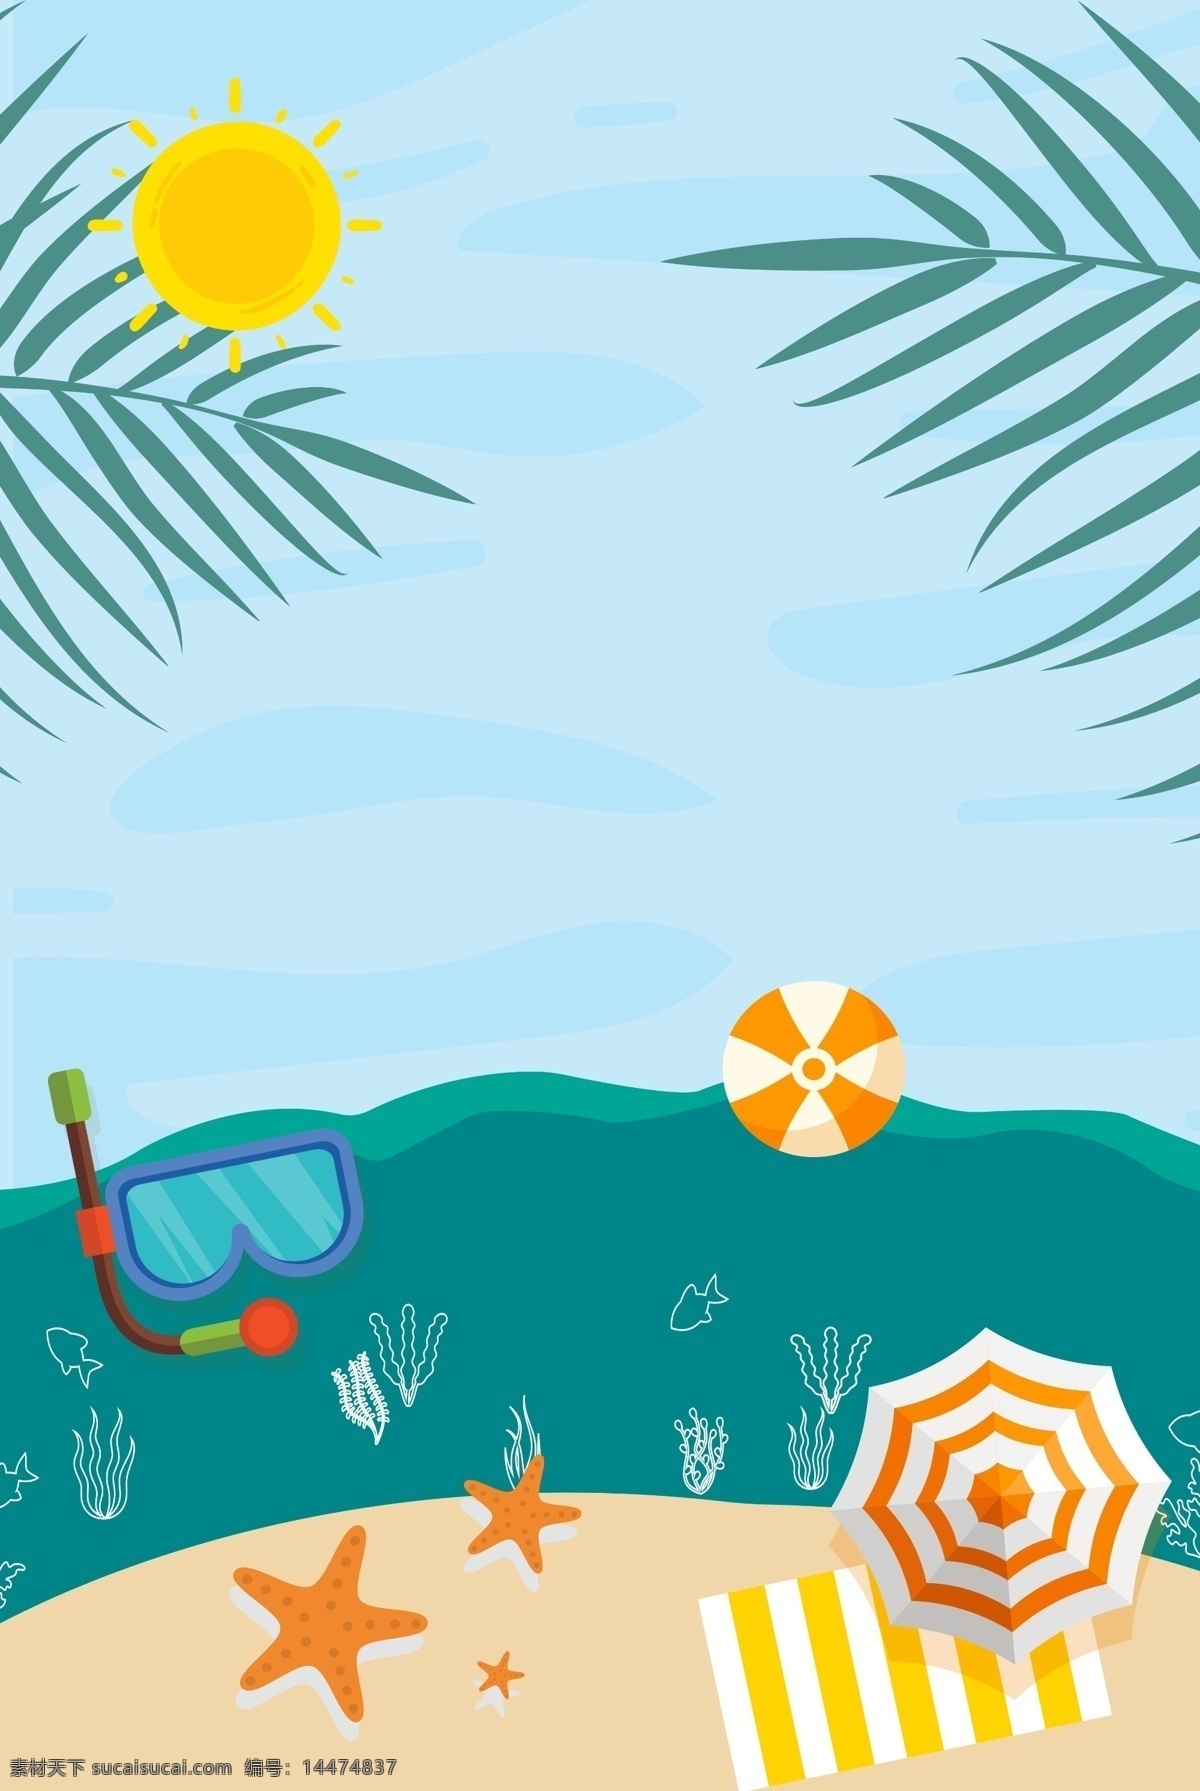 海洋 海滨 假日 旅行 背景 潜水 护目镜 夏天 水生植物 凉爽 假期 卡通 太阳 树叶 海星 阳伞 泳圈